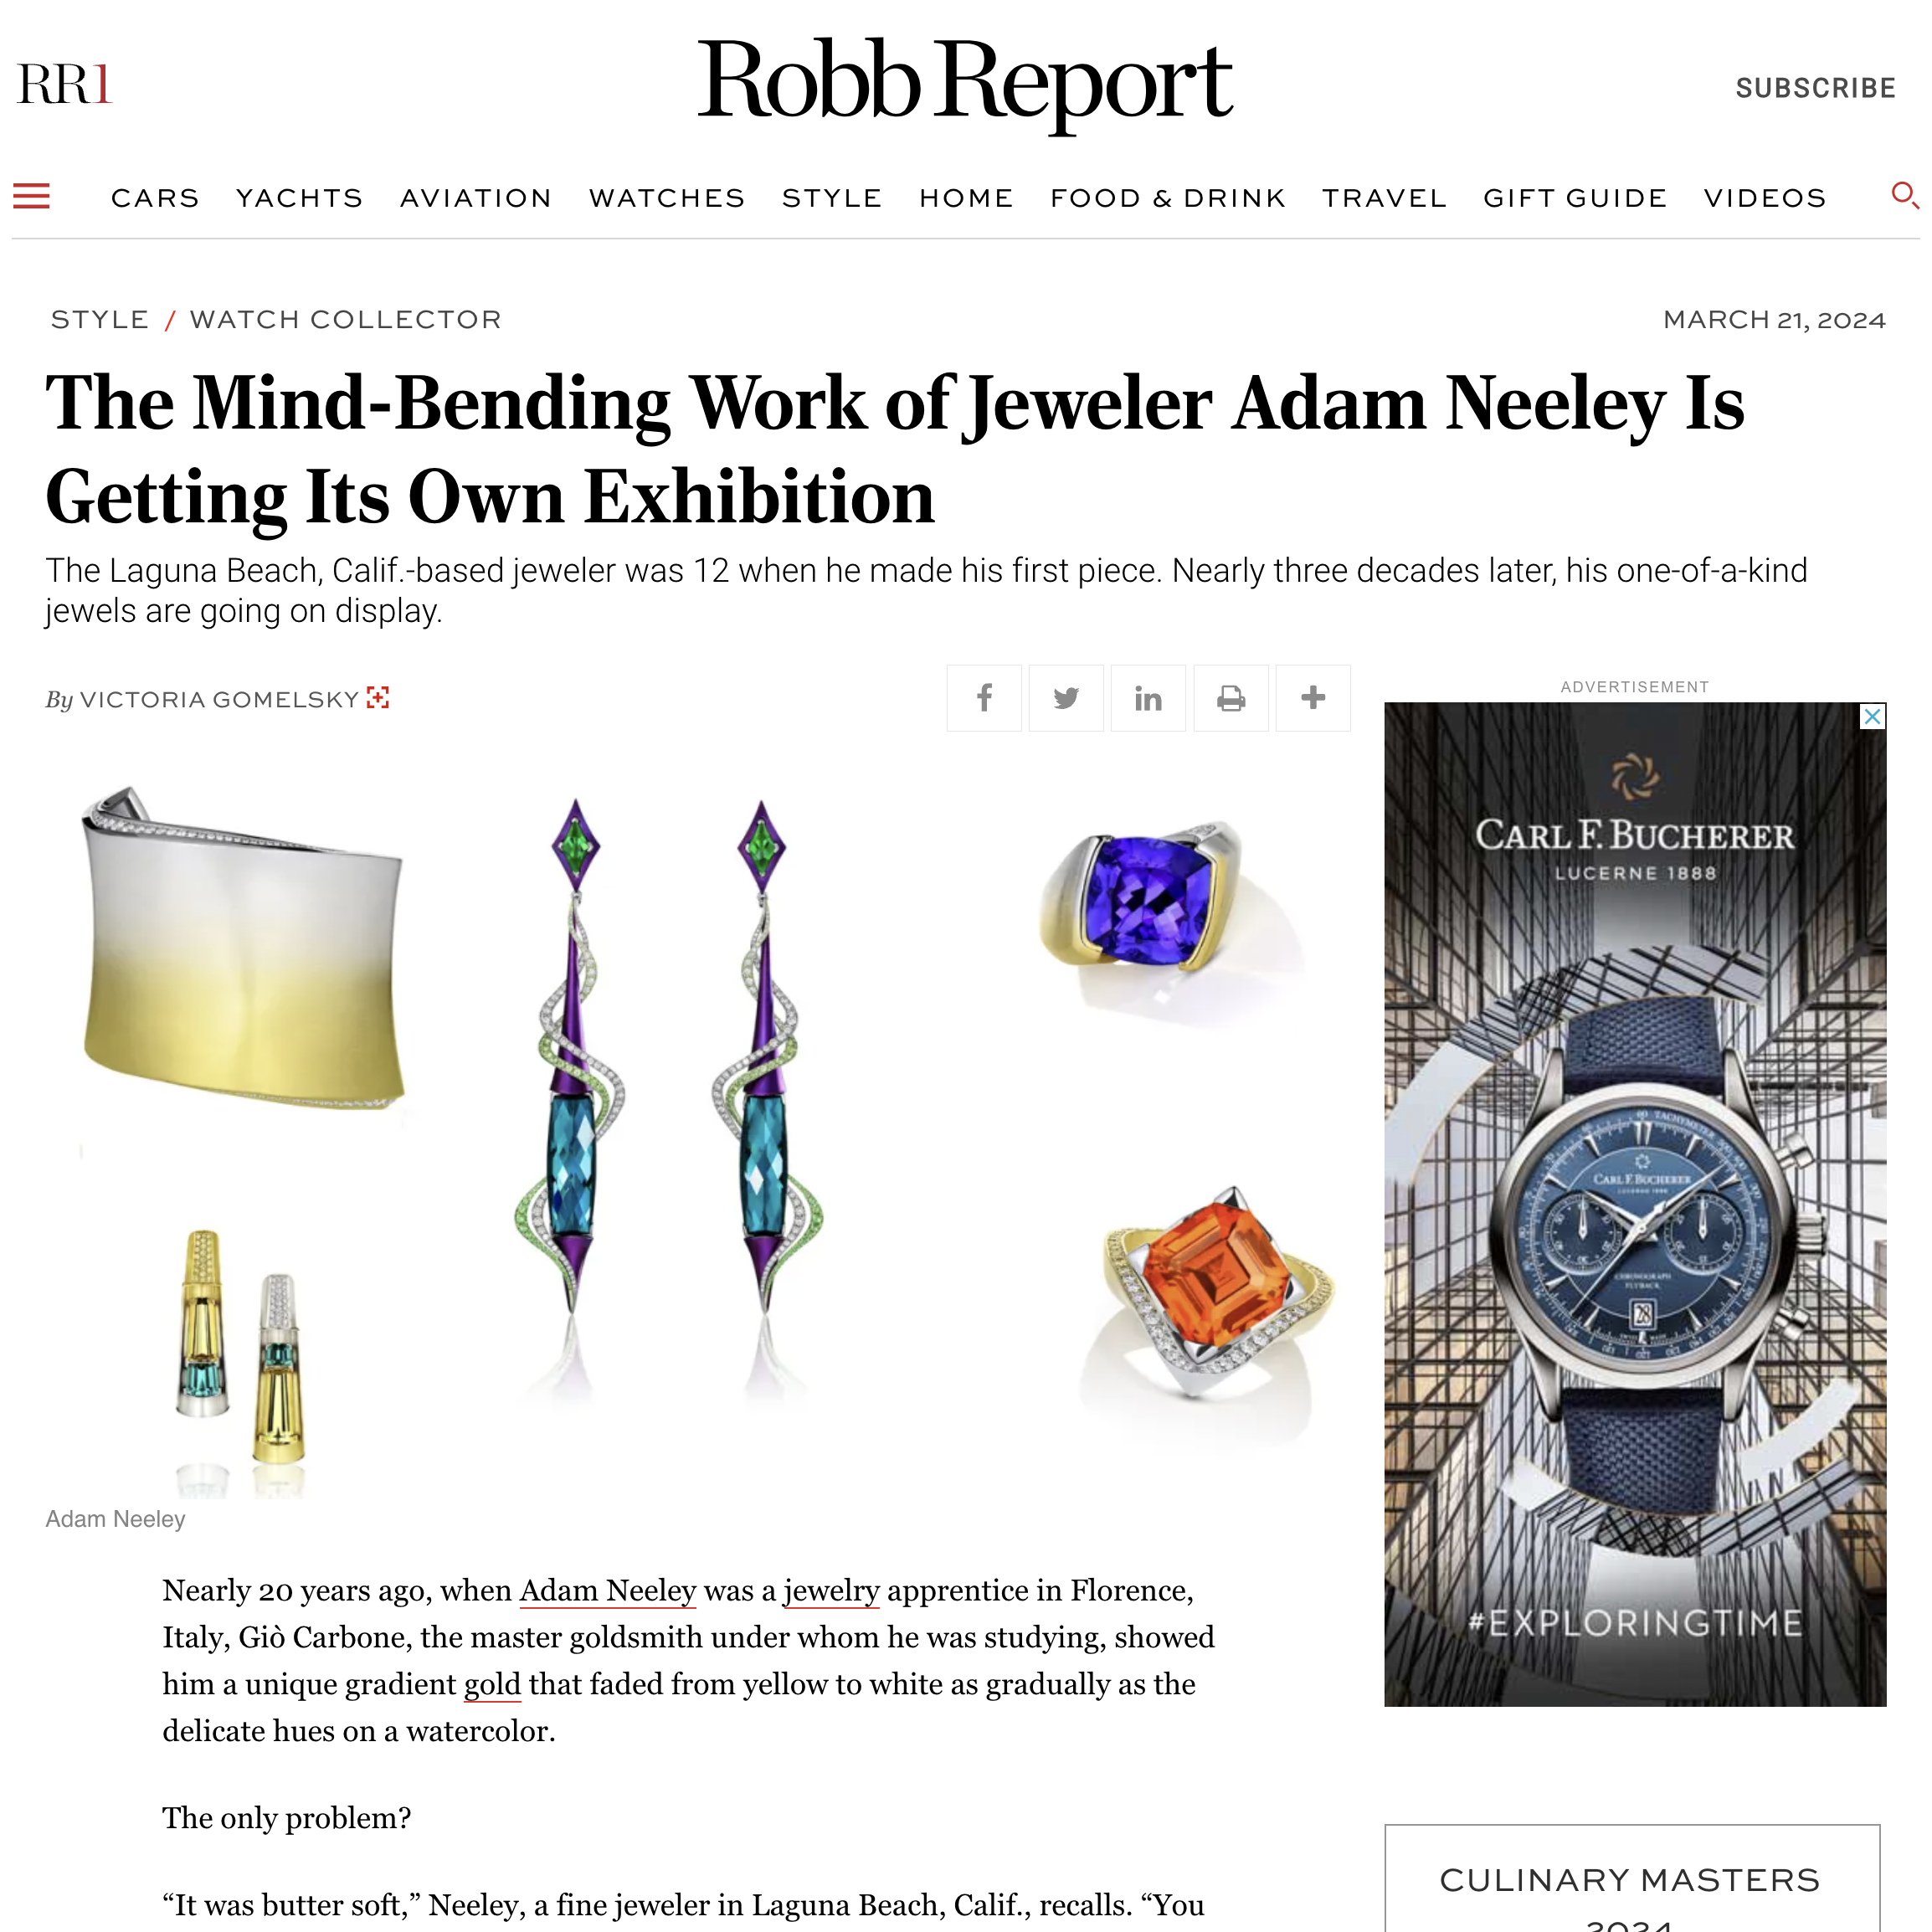 Robb Report The Mind-Bending Work of Jeweler Adam Neeley is Getting It's Own Exhibition